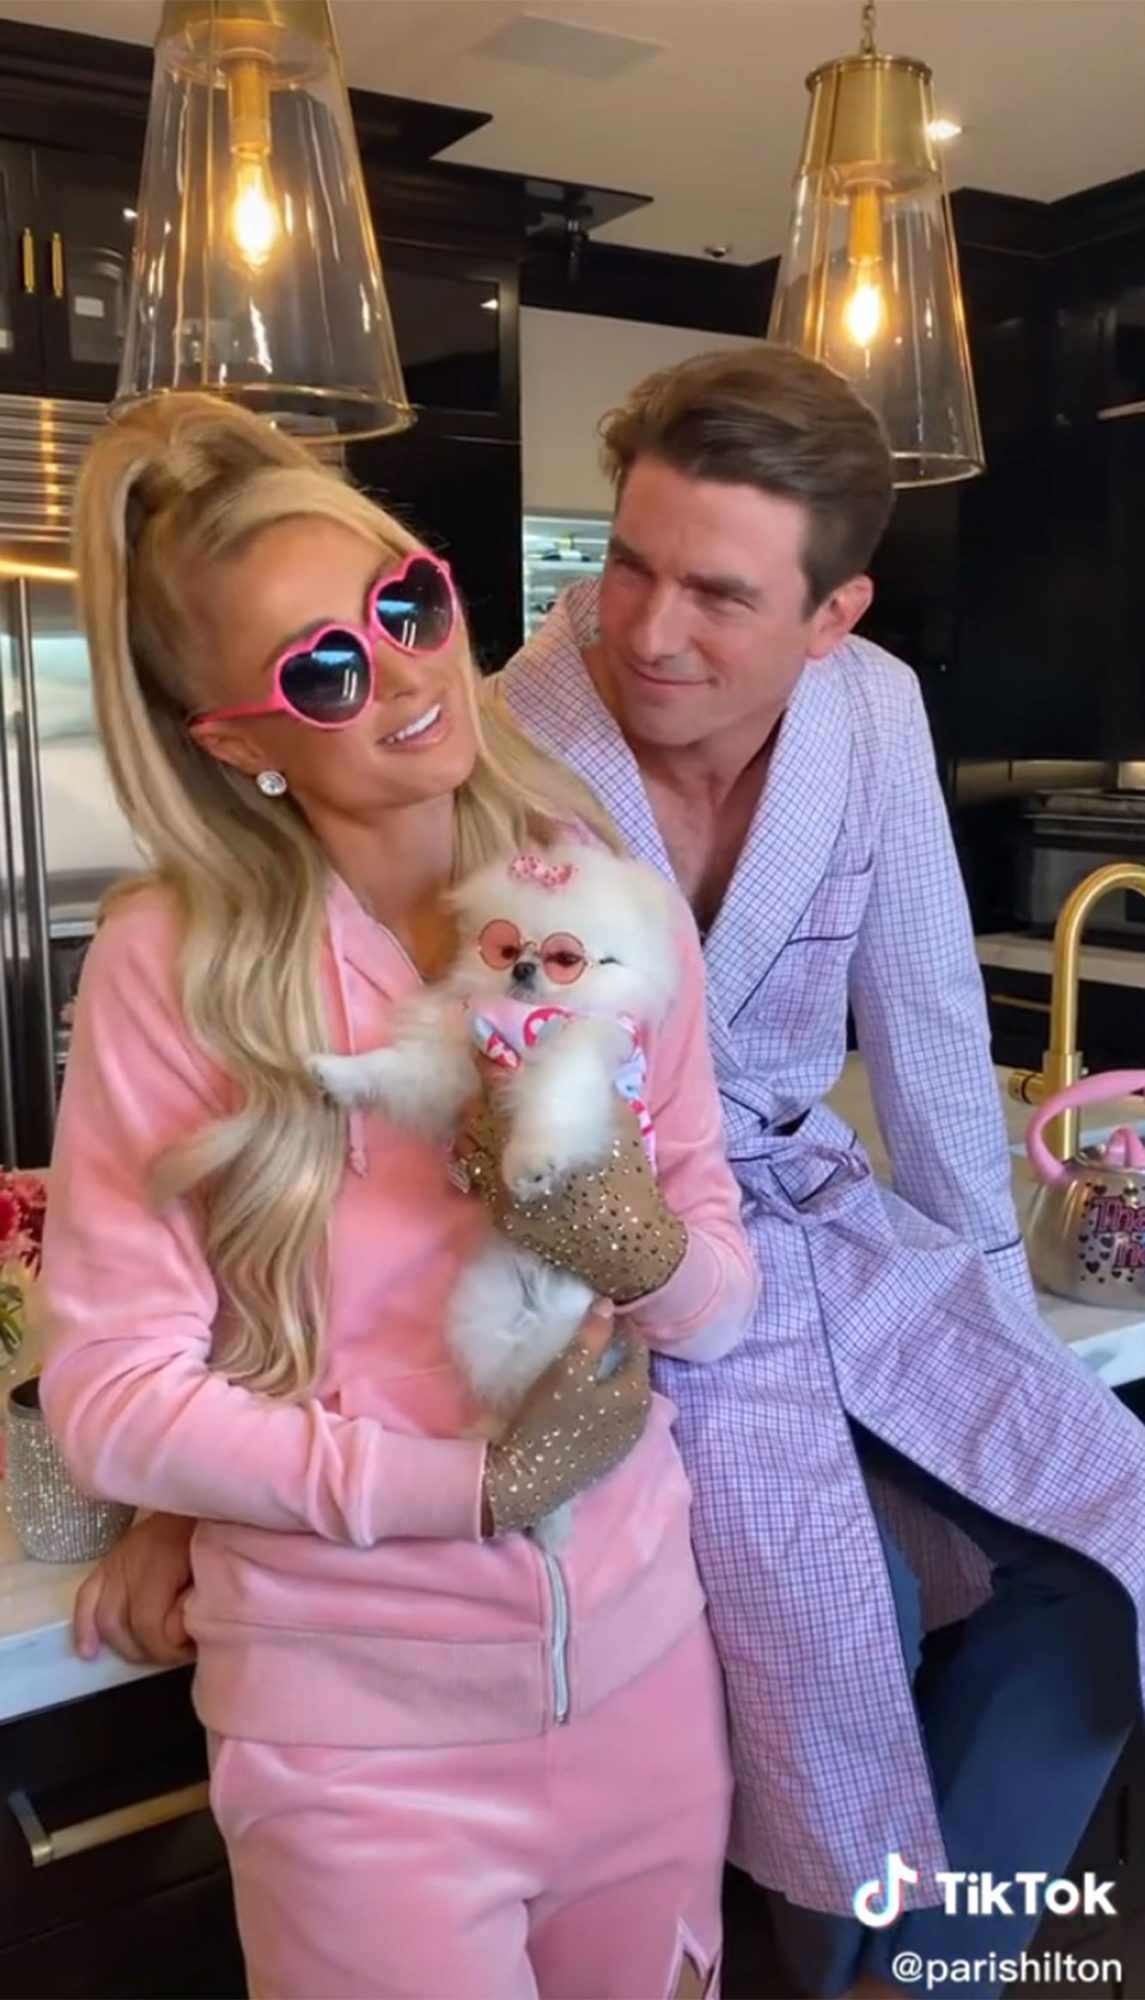 Paris Hilton's latest TikTok with deep fake Tom Cruise